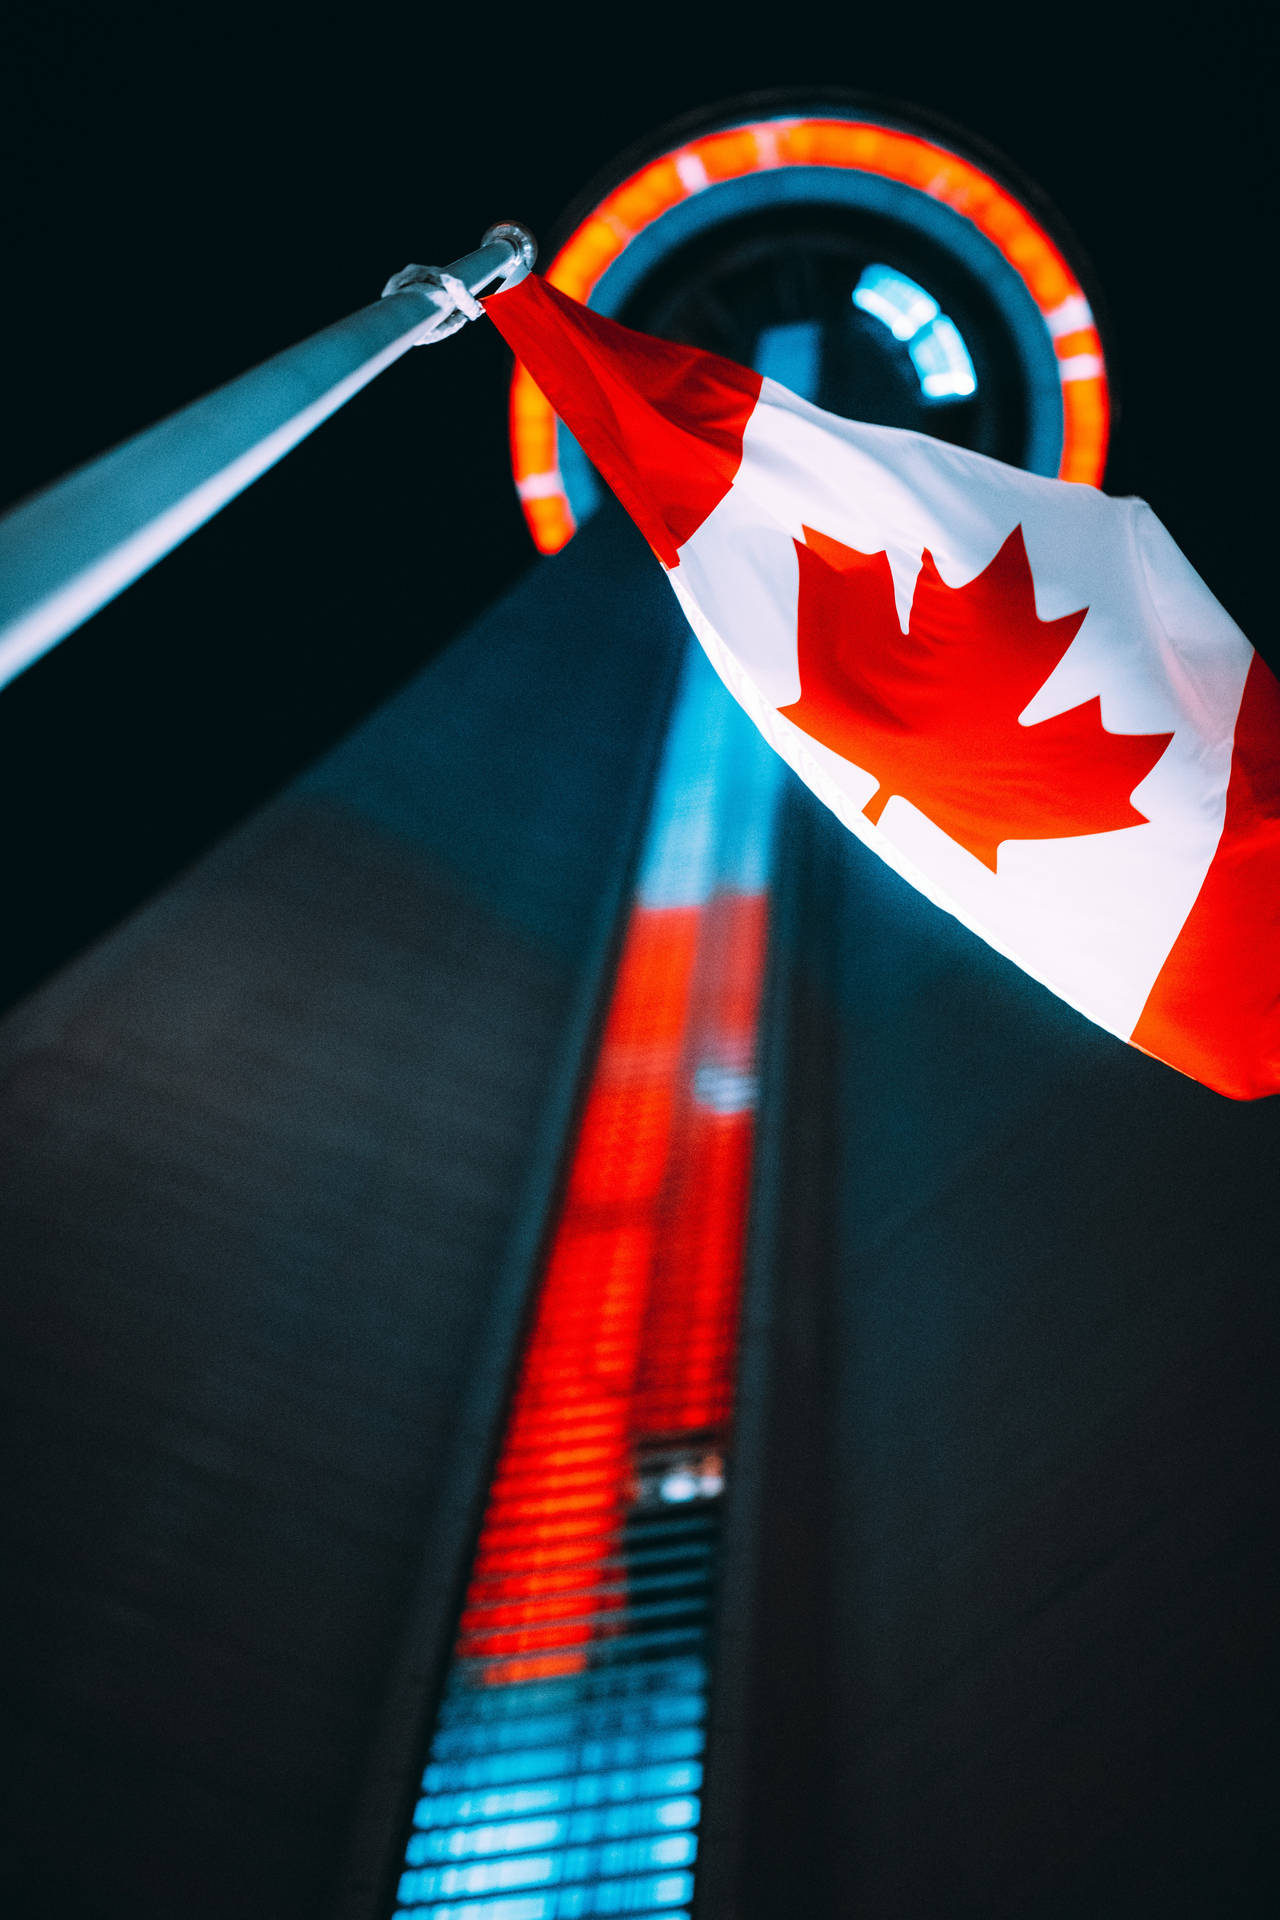 Kanadensiskaflaggan Cn Tower Wallpaper